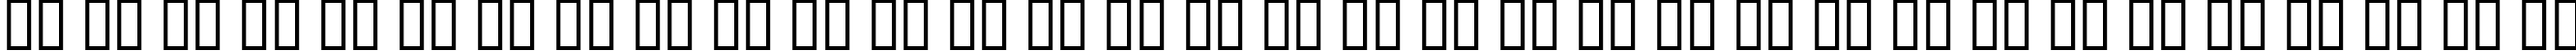 Пример написания русского алфавита шрифтом Fadgod